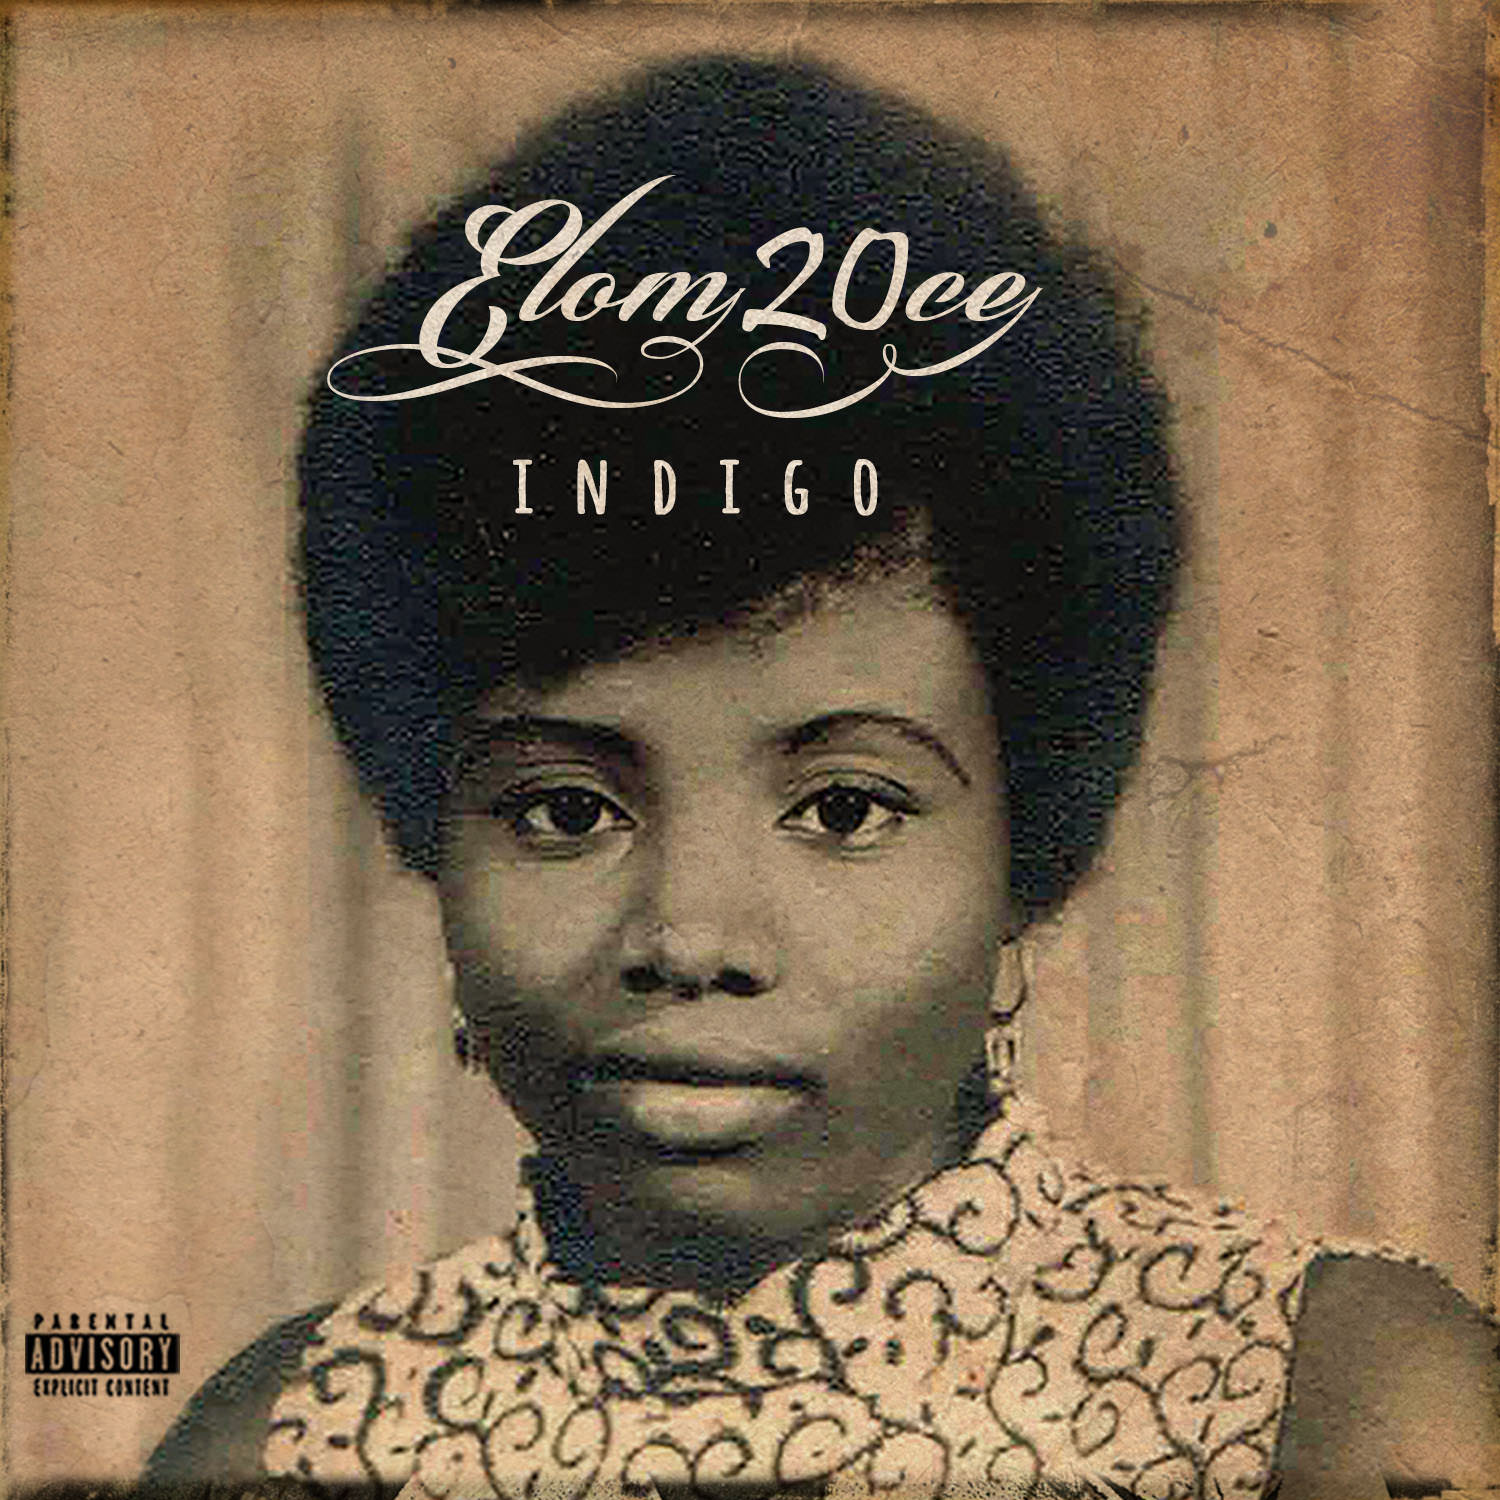 INDIGO-Elom 20ce-nouvel-album-11-Décembre-rap-togo-france-français-pochette-2015-Cover